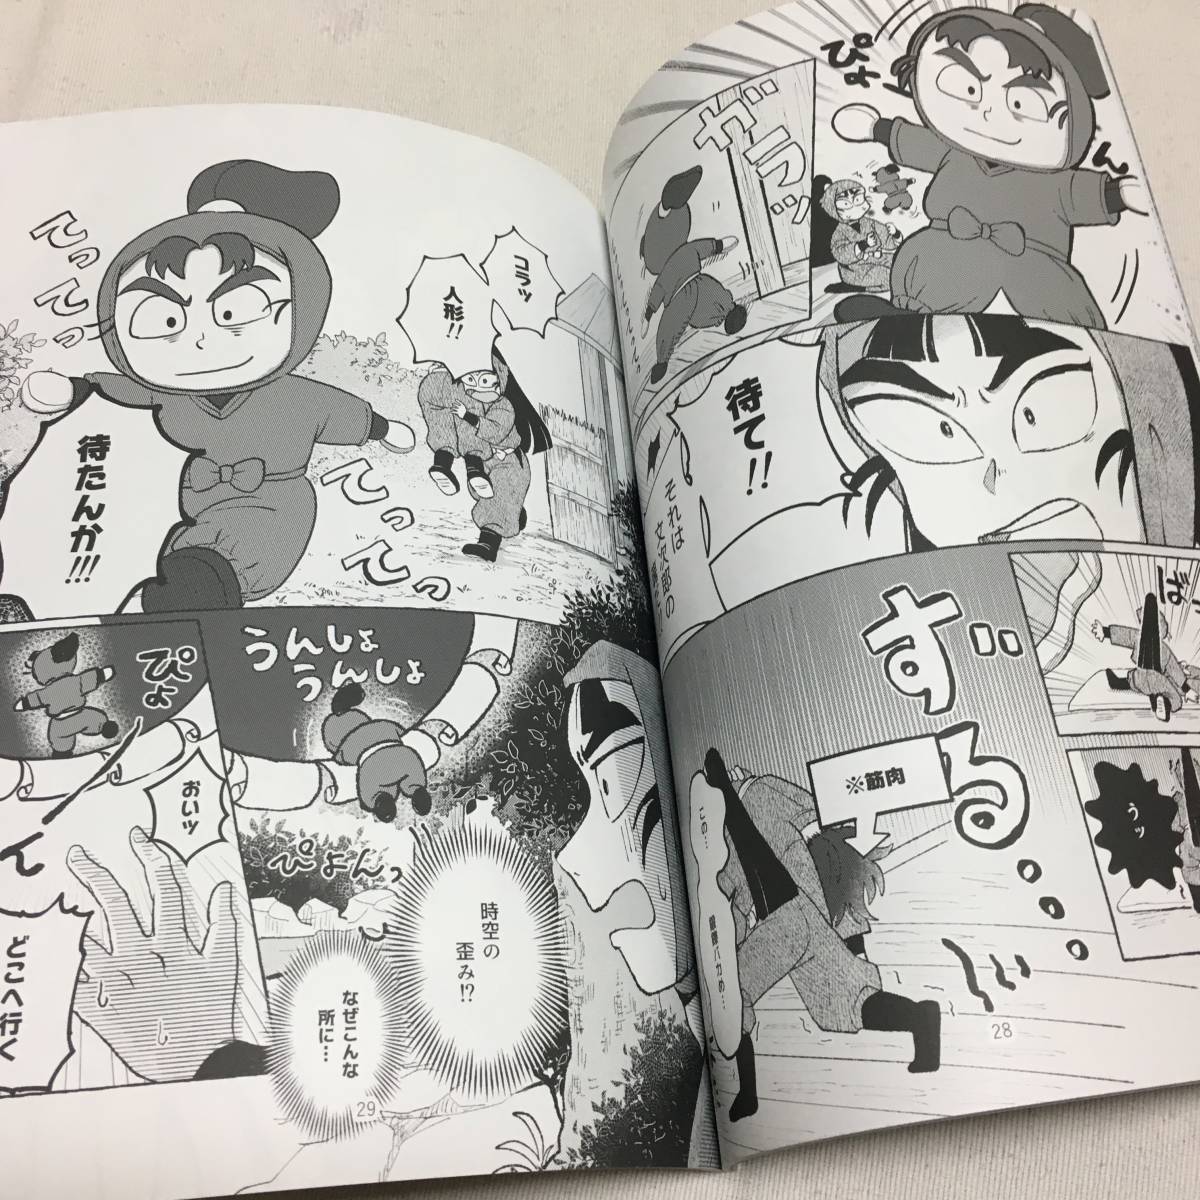  Nintama Rantaro . no. ninja . Taro журнал узкого круга литераторов шесть год . комплект . время поездка делать рассказ /moro разделение yamohe магазин 